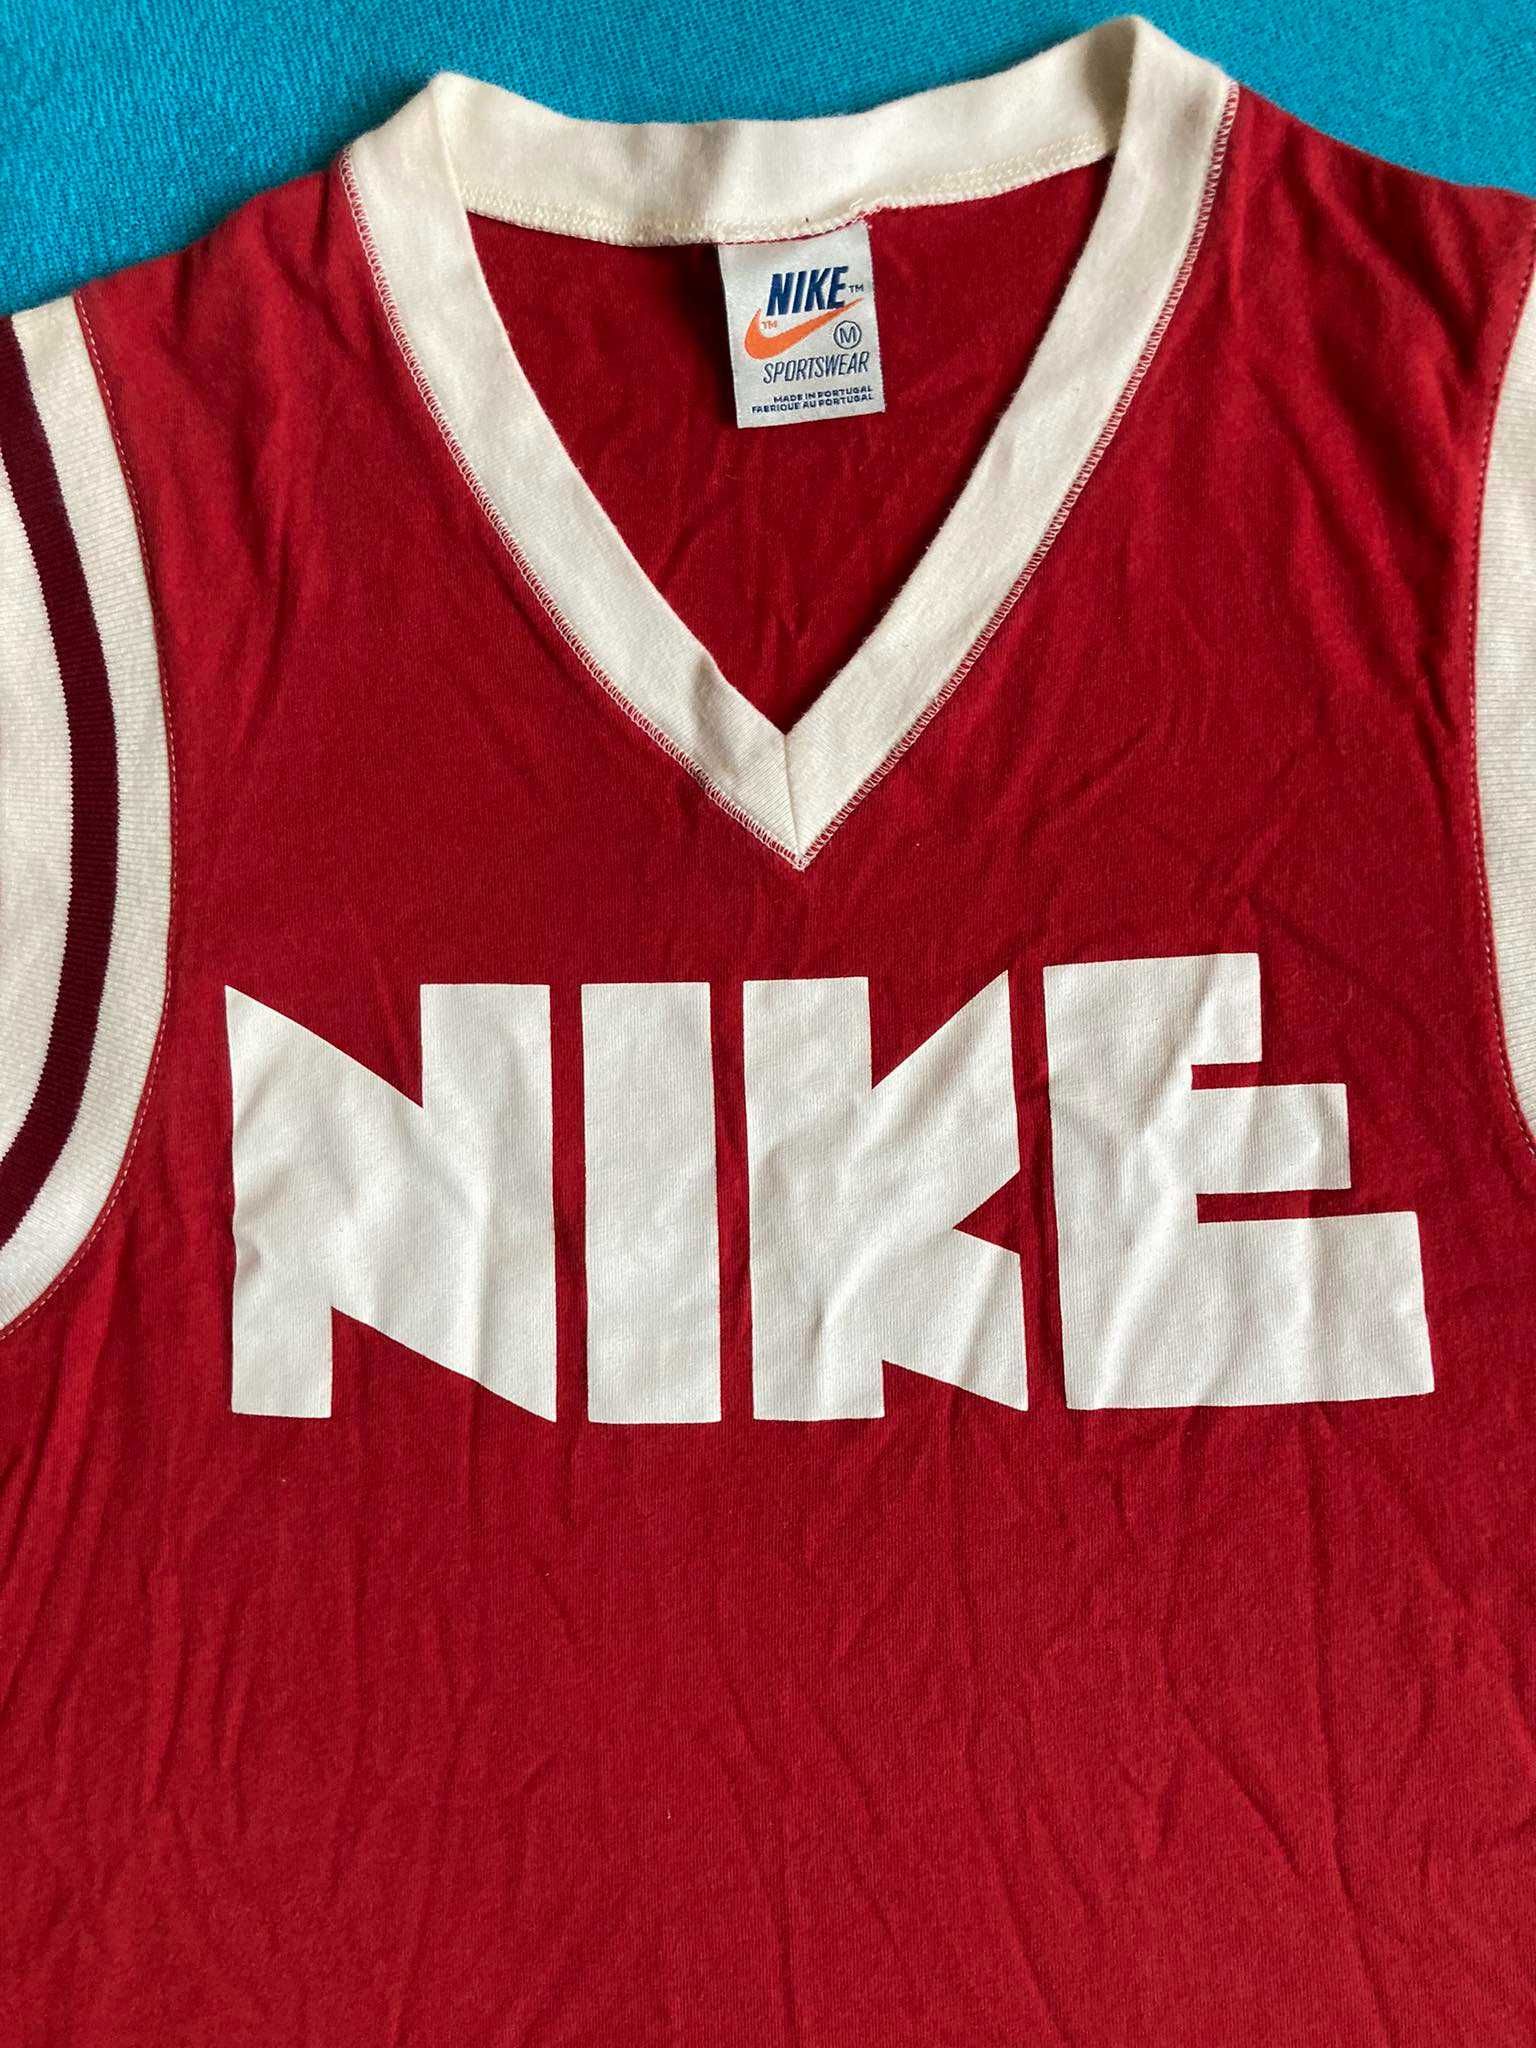 T-shirt Nike 80s tag Y2K Roz. M